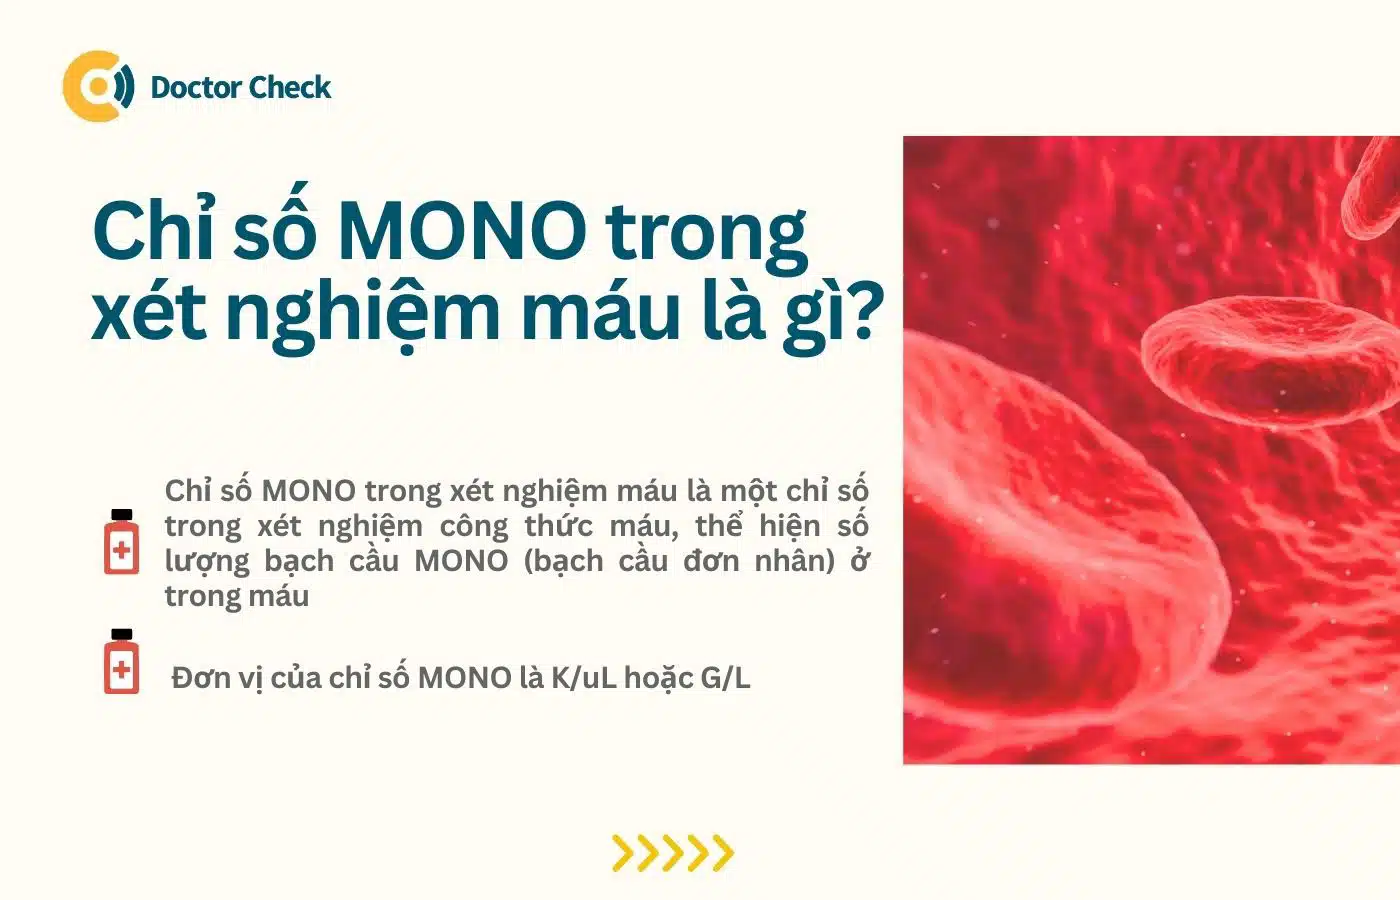 Chỉ số MONO trong xét nghiệm máu là gì?